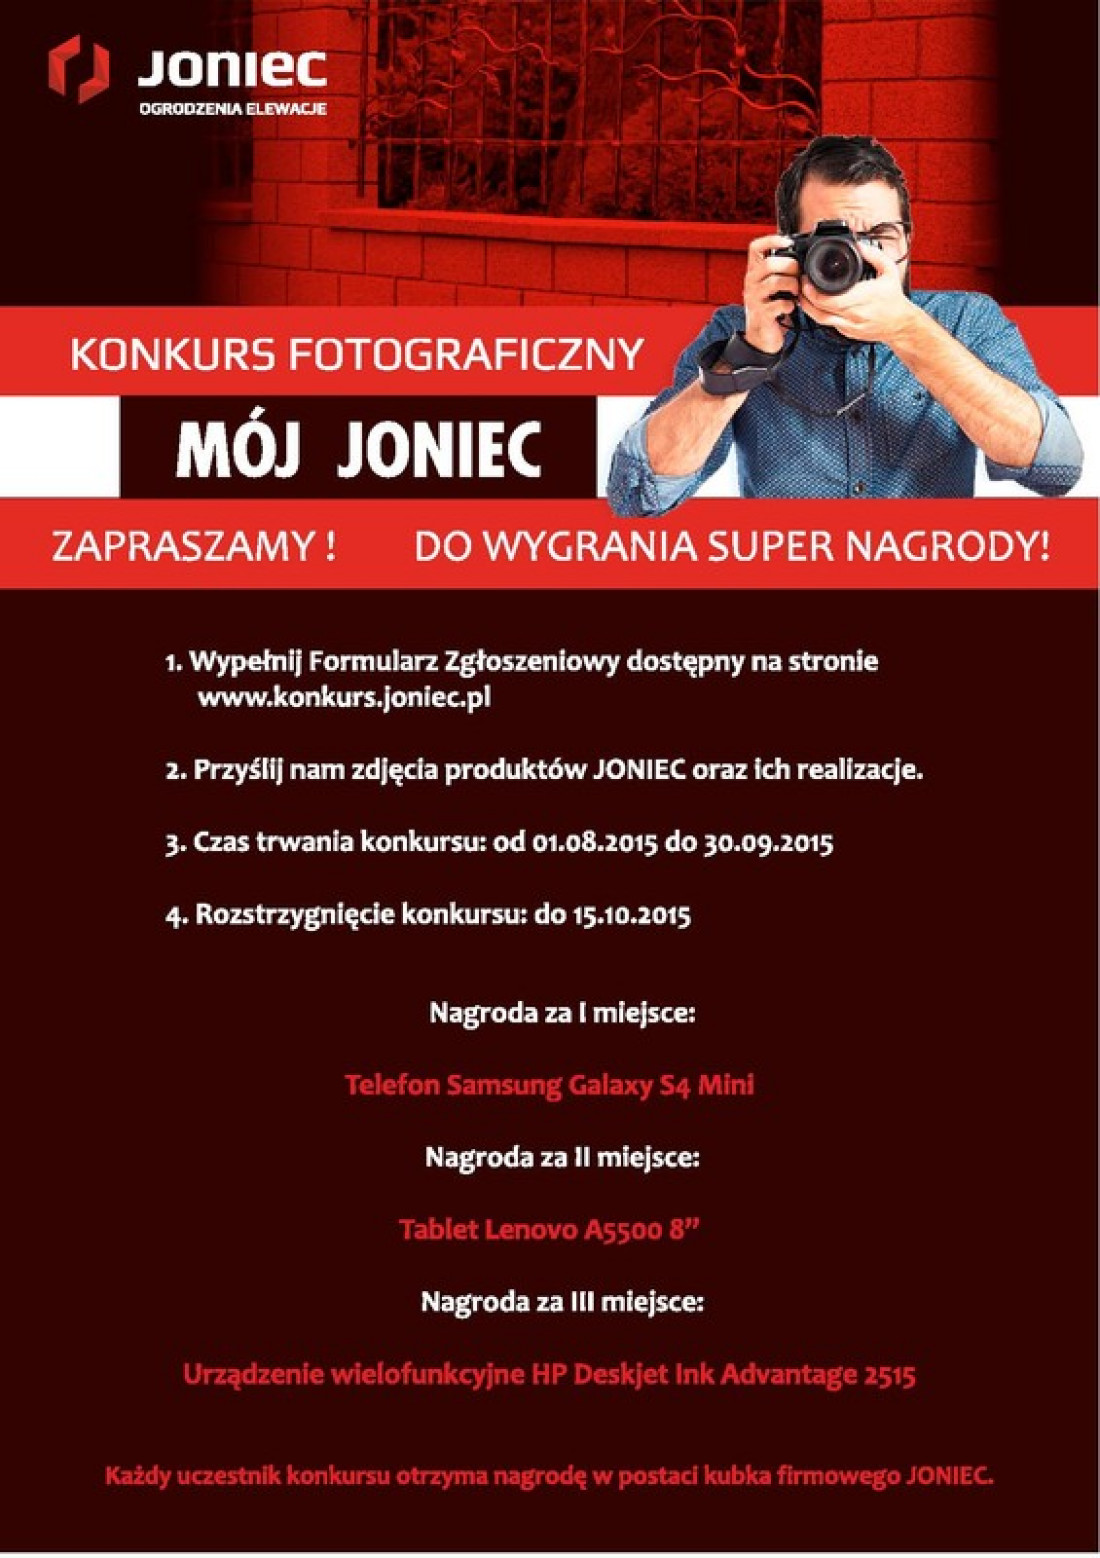 Konkurs fotograficzny Joniec